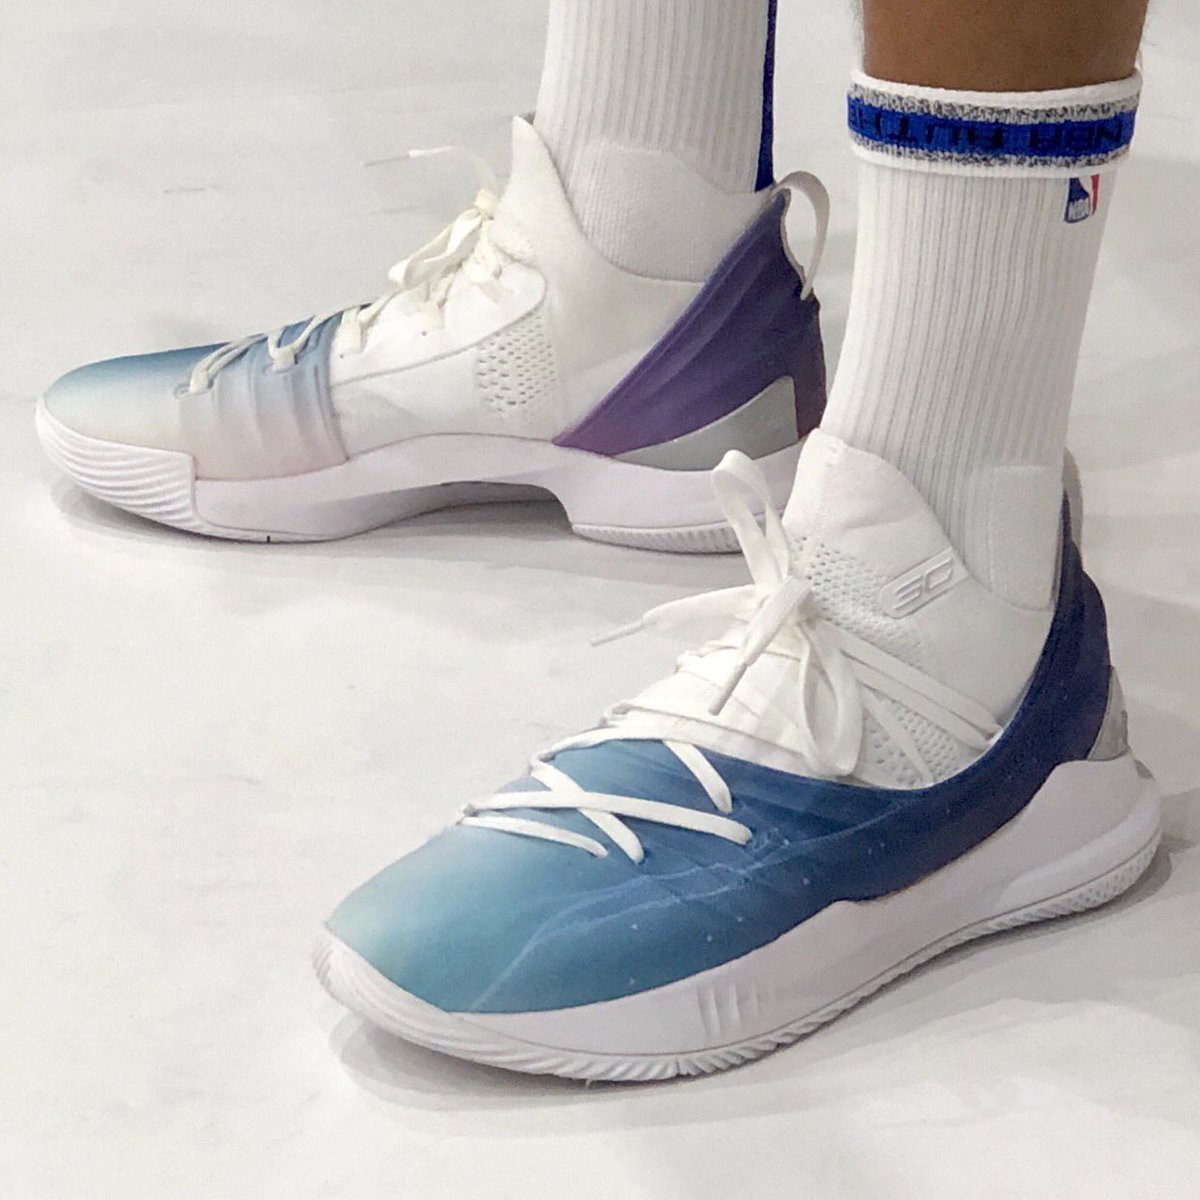 Yeezy, Jordan, OFF-White và những mẫu giày đỉnh nhất của ngày NBA Media Day 2018 - Ảnh 3.